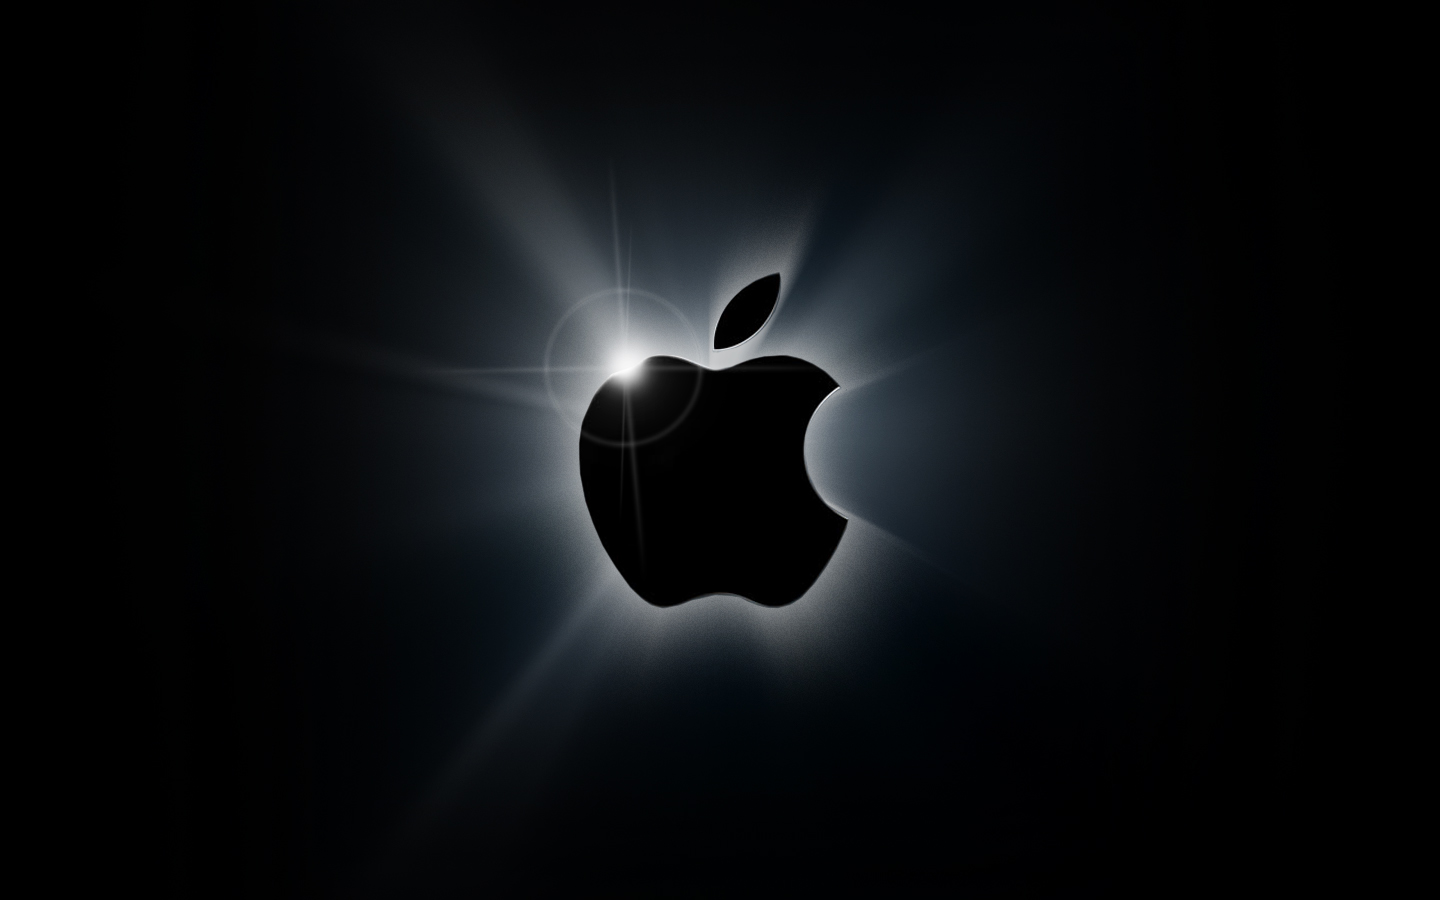 http://2.bp.blogspot.com/-NDbD82i_WuA/UBg1MgLGoBI/AAAAAAAAA10/ZGhc054AIos/s1600/apple-logo9.jpg